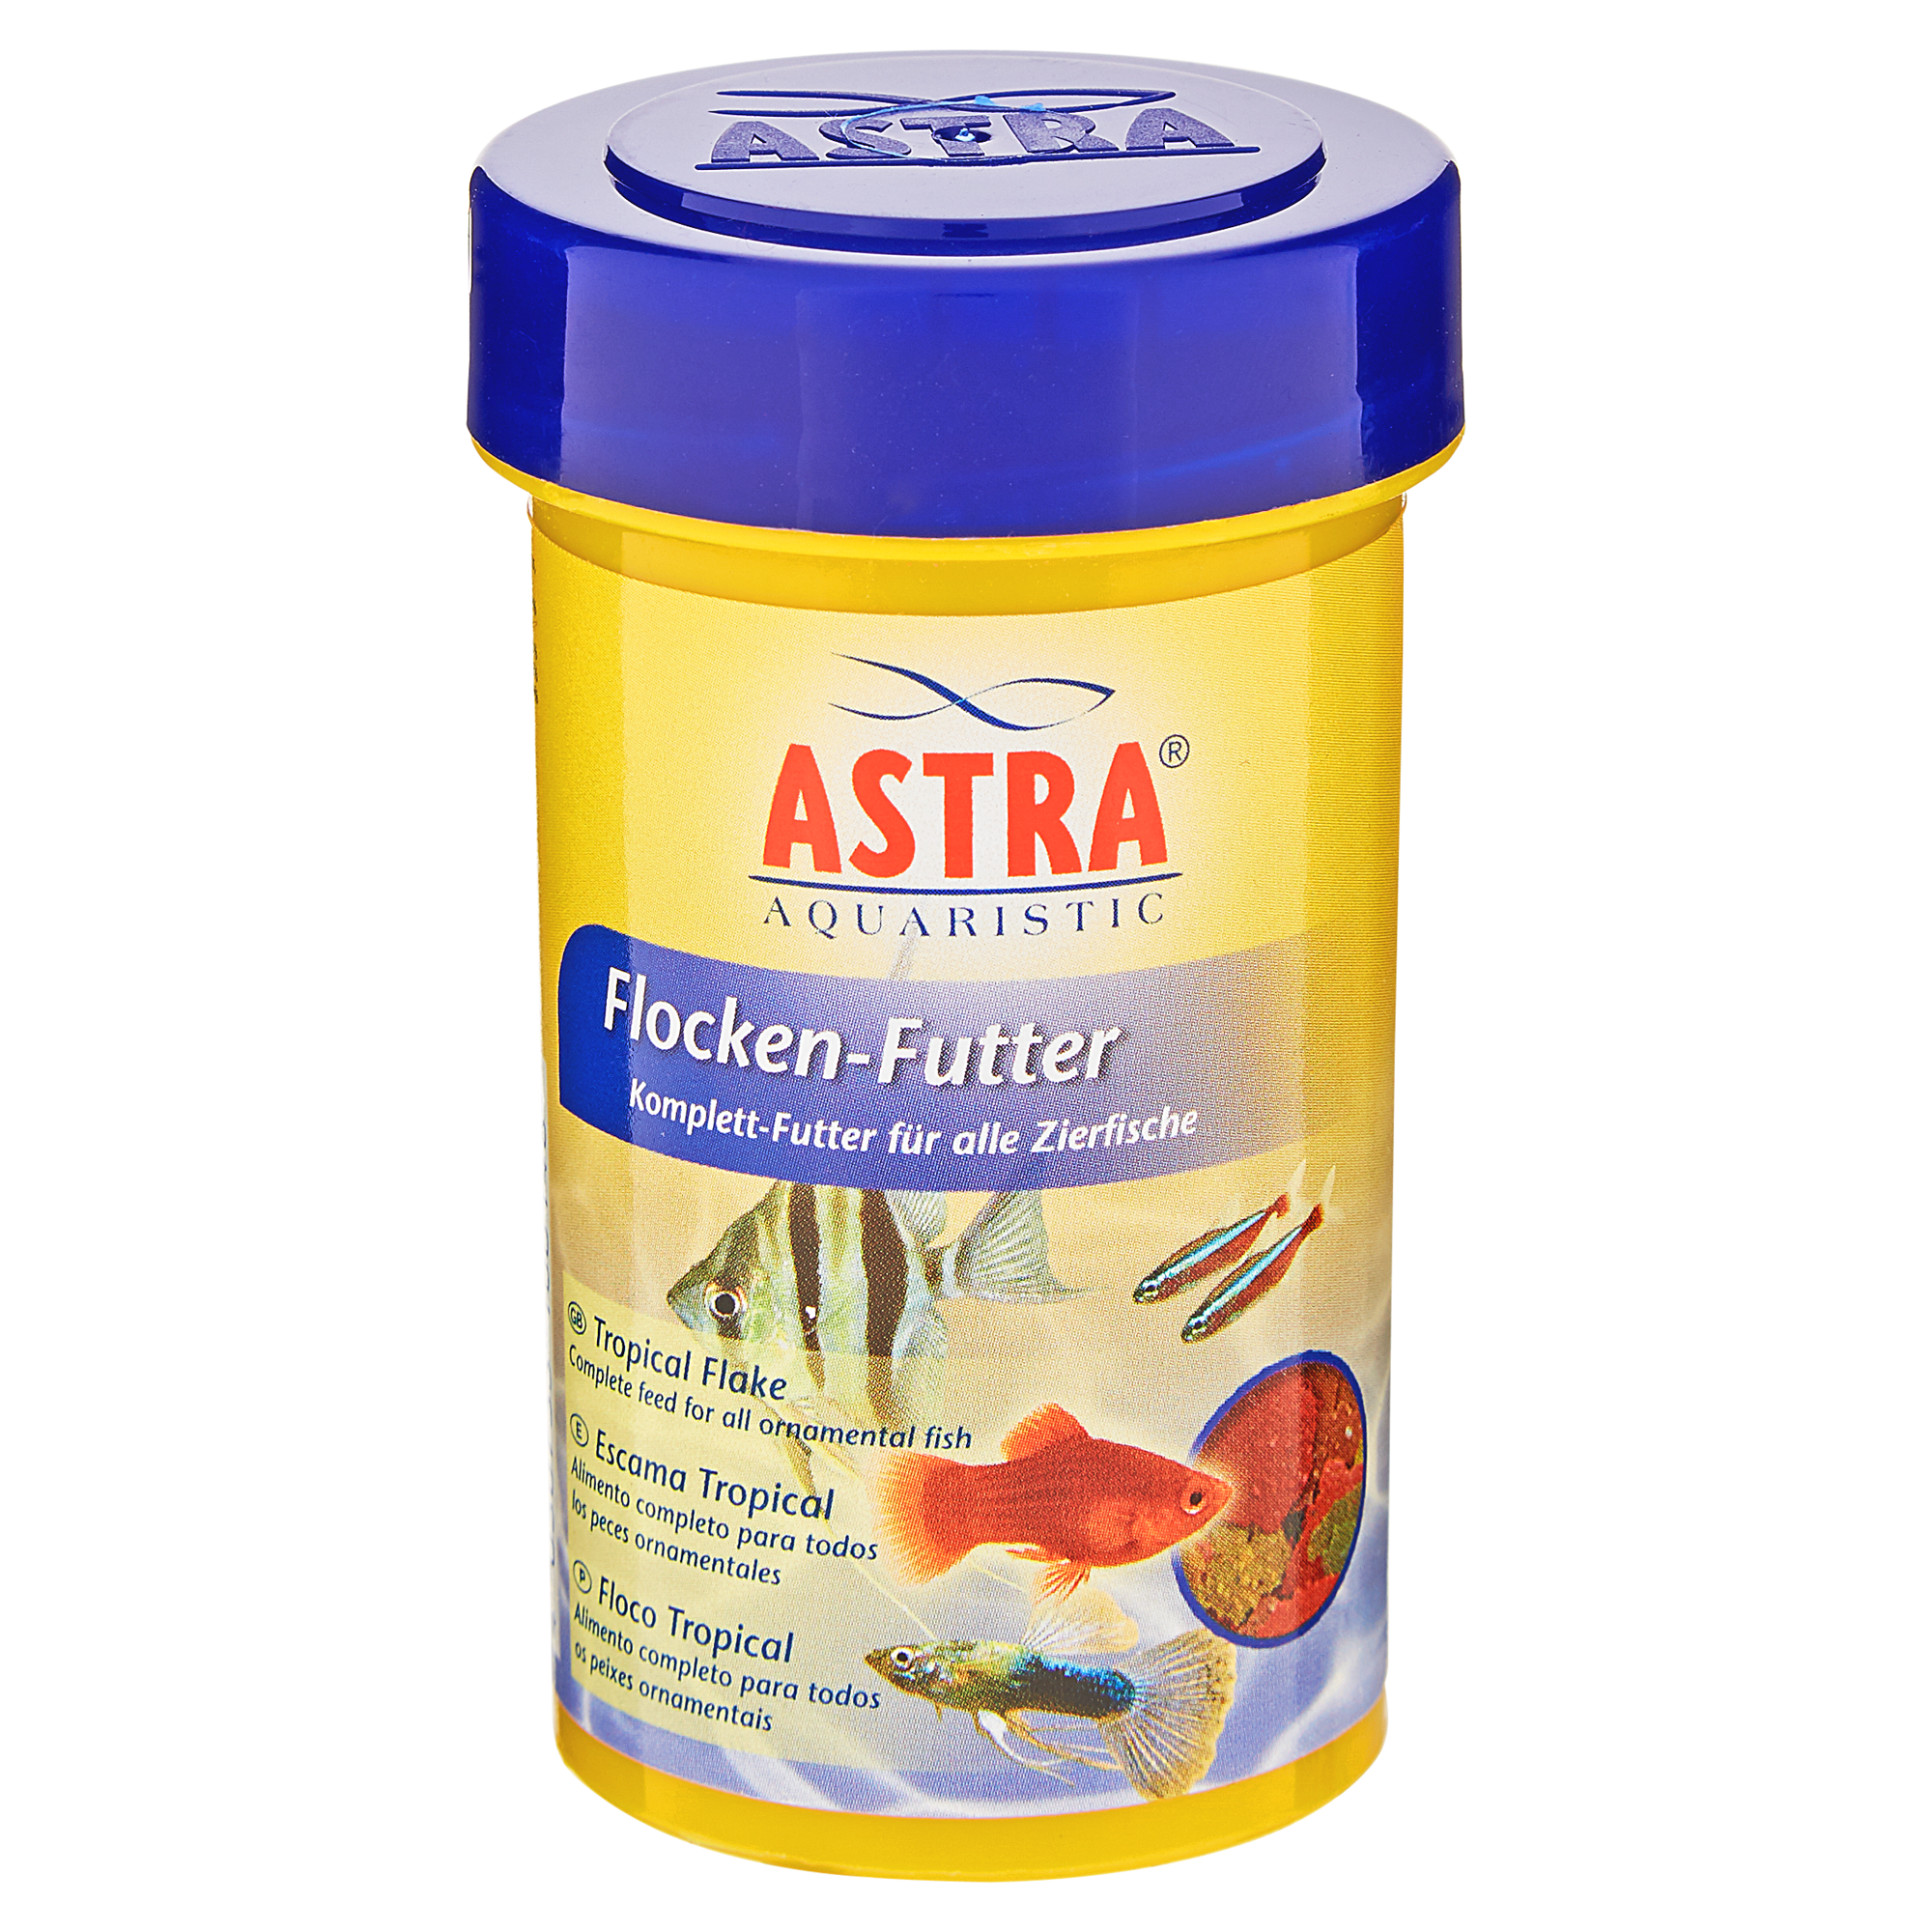 Fischfutterflocken 100 ml + product picture